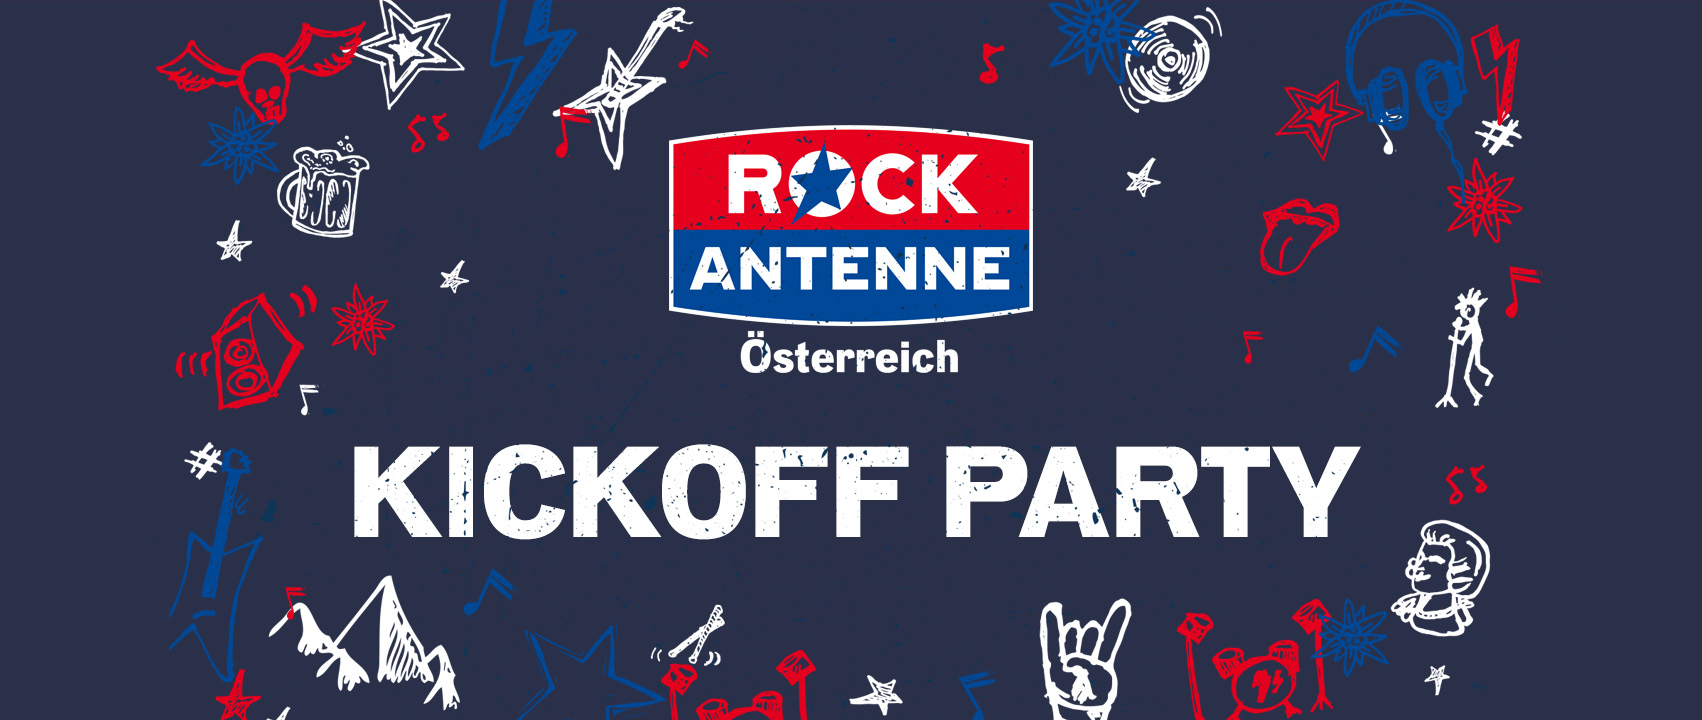 ROCK ANTENNE Österreich Kickoff Party am 23. January 2023 @ Szene Wien.